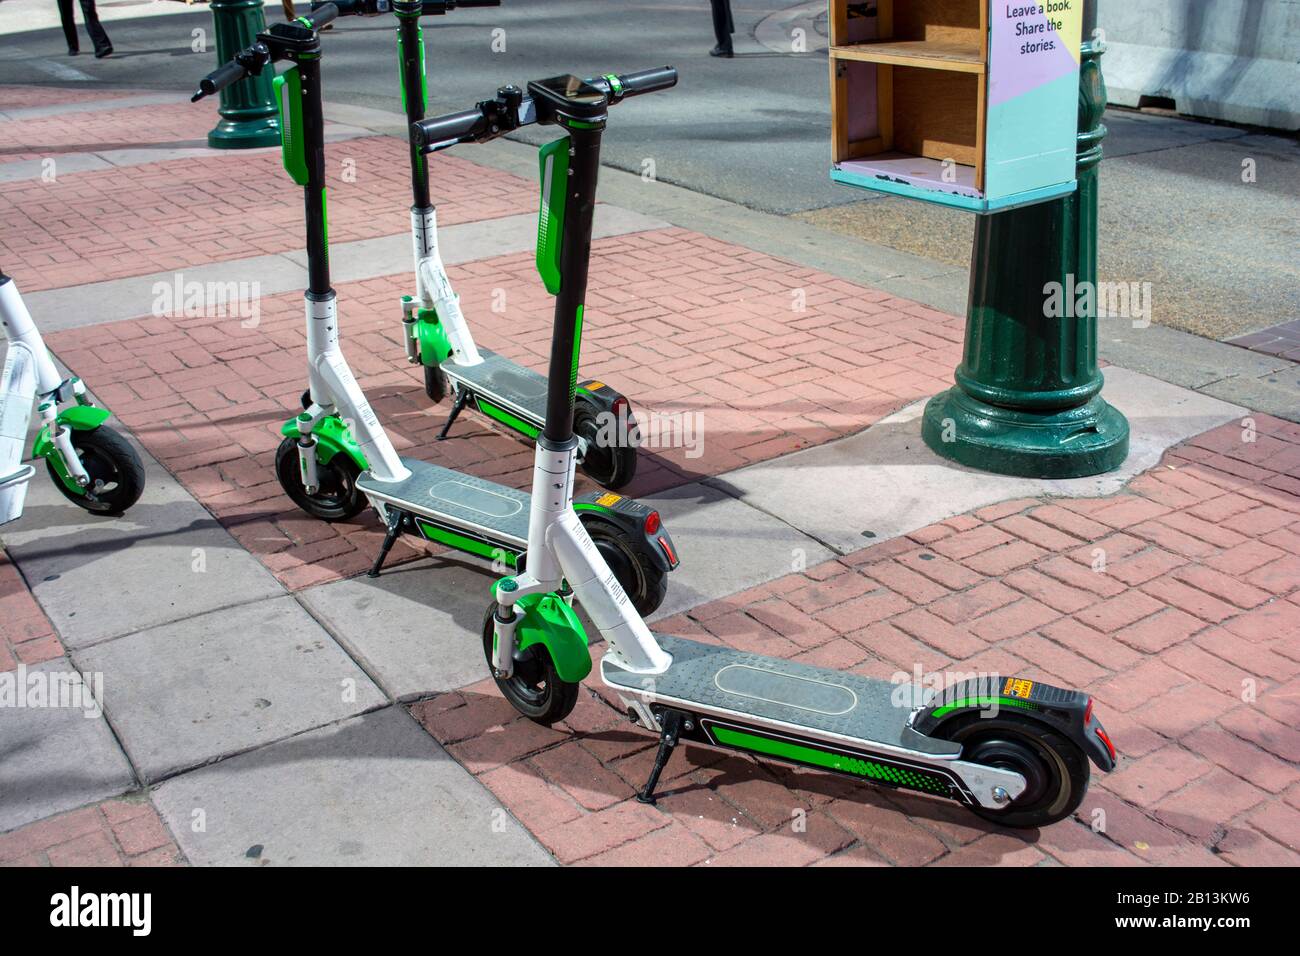 Service de location de scooters sur le trottoir du centre-ville - économie de partage Banque D'Images